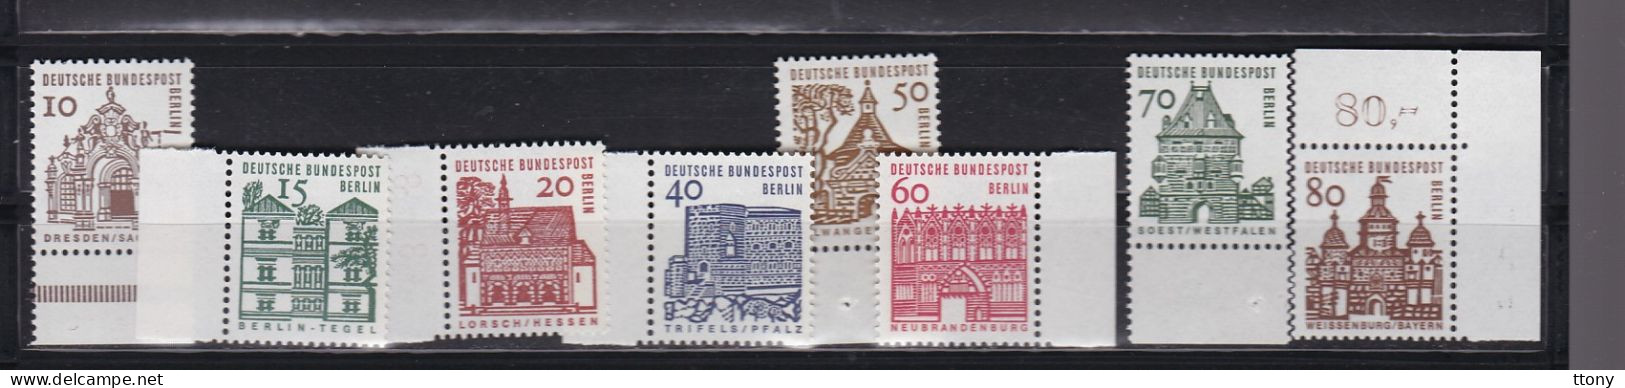 Une Série 8  Timbres   Bords De Feuille   Timbres   Deutsche Bundespost  Berlin  ** Monuments - Ungebraucht